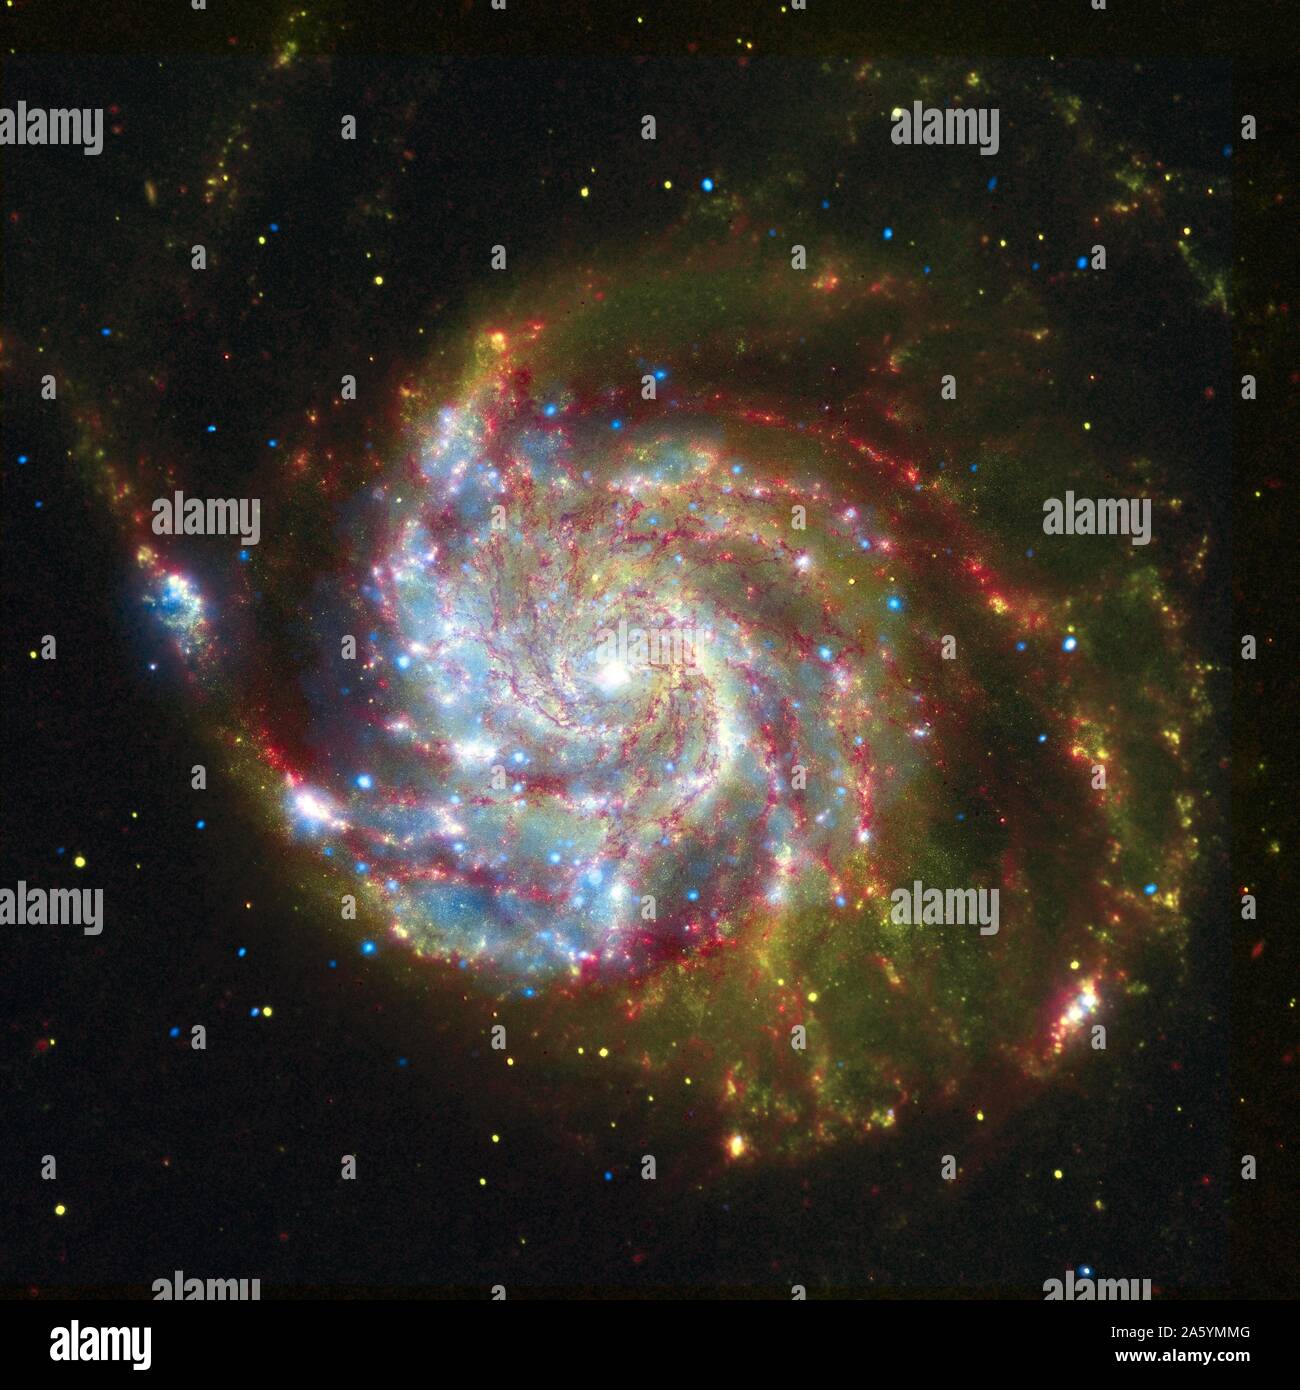 La galassia a spirale Messier 101, dal composito di vedute da Spitzer, Hubble e Chandra. Foto Stock